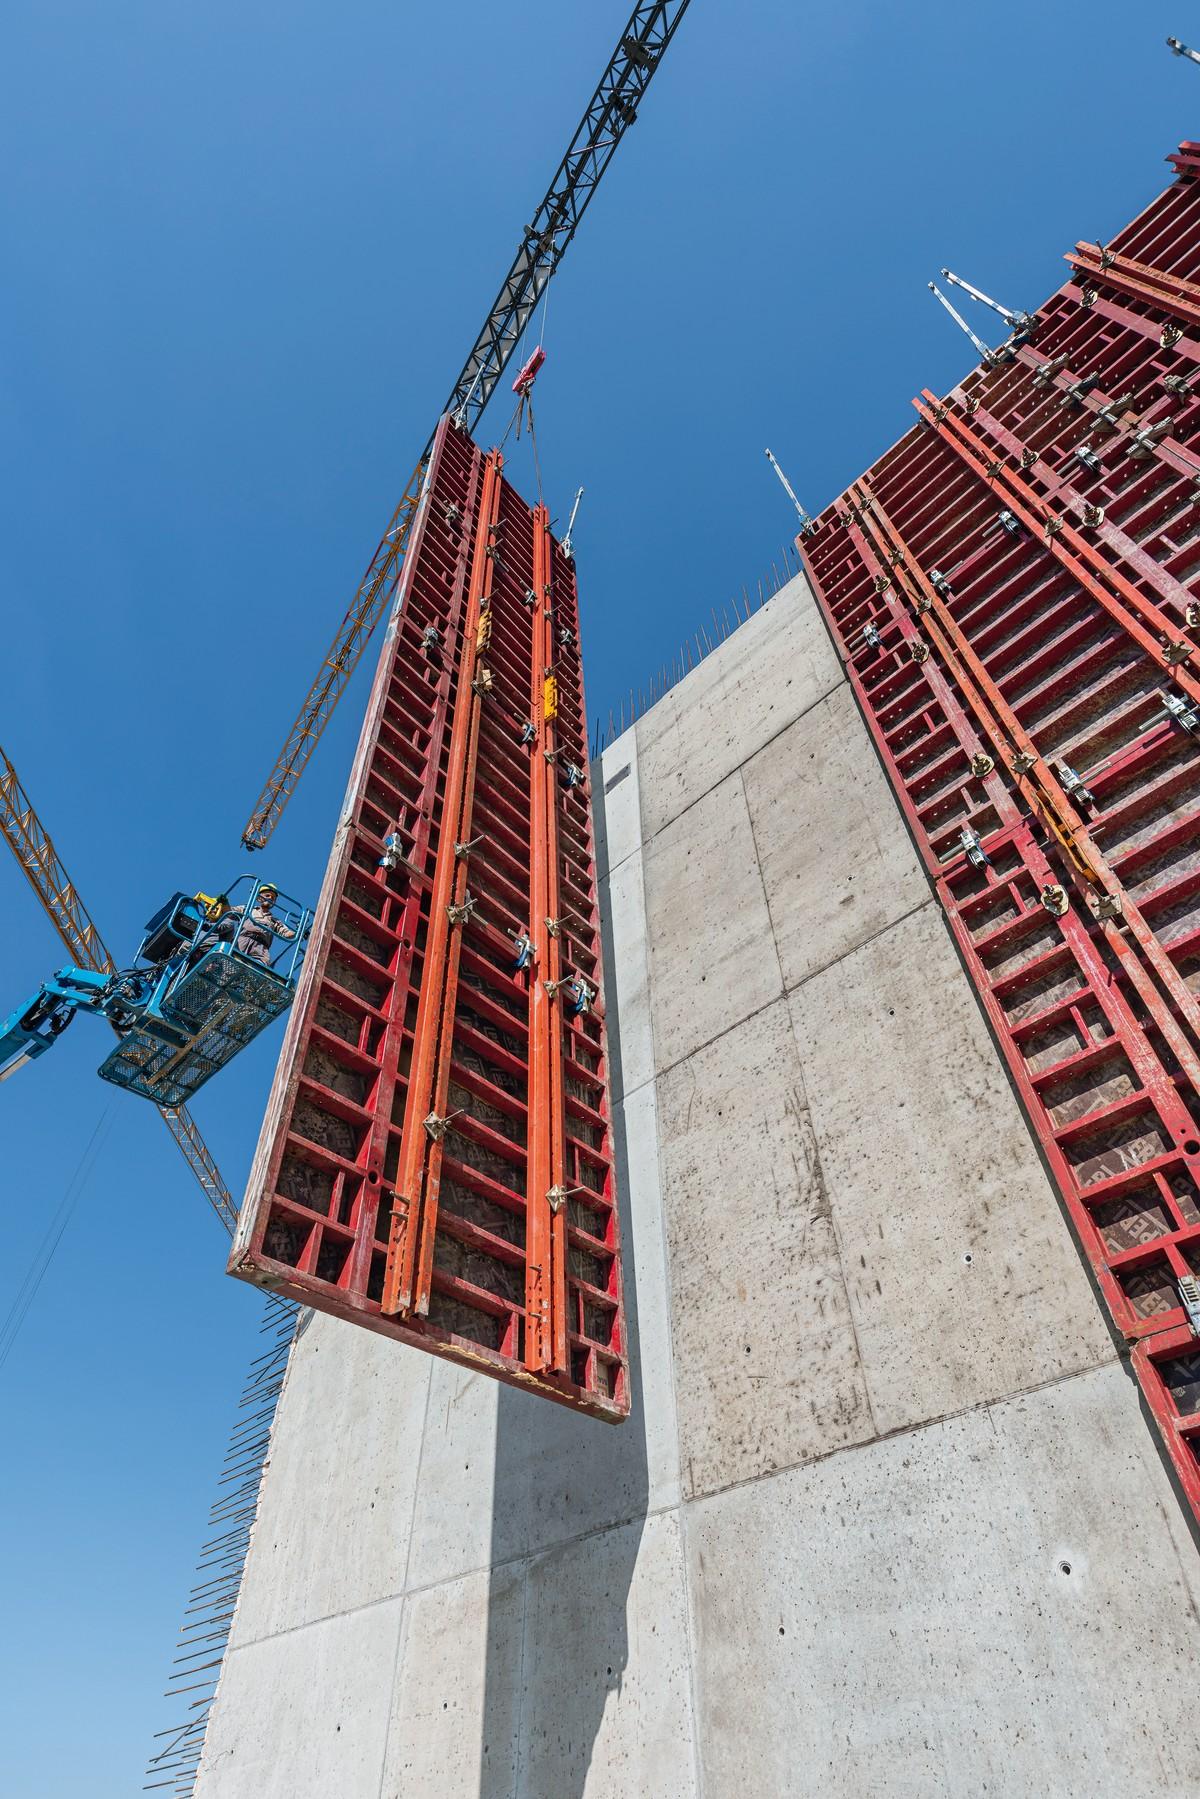 Für zusätzliche Stabilität der aufgestockten Wandschalungselemente sorgen integrierten Stahlriegel aus dem Variokit-Ingenieurbaukasten. | Foto: Andreas Tausend